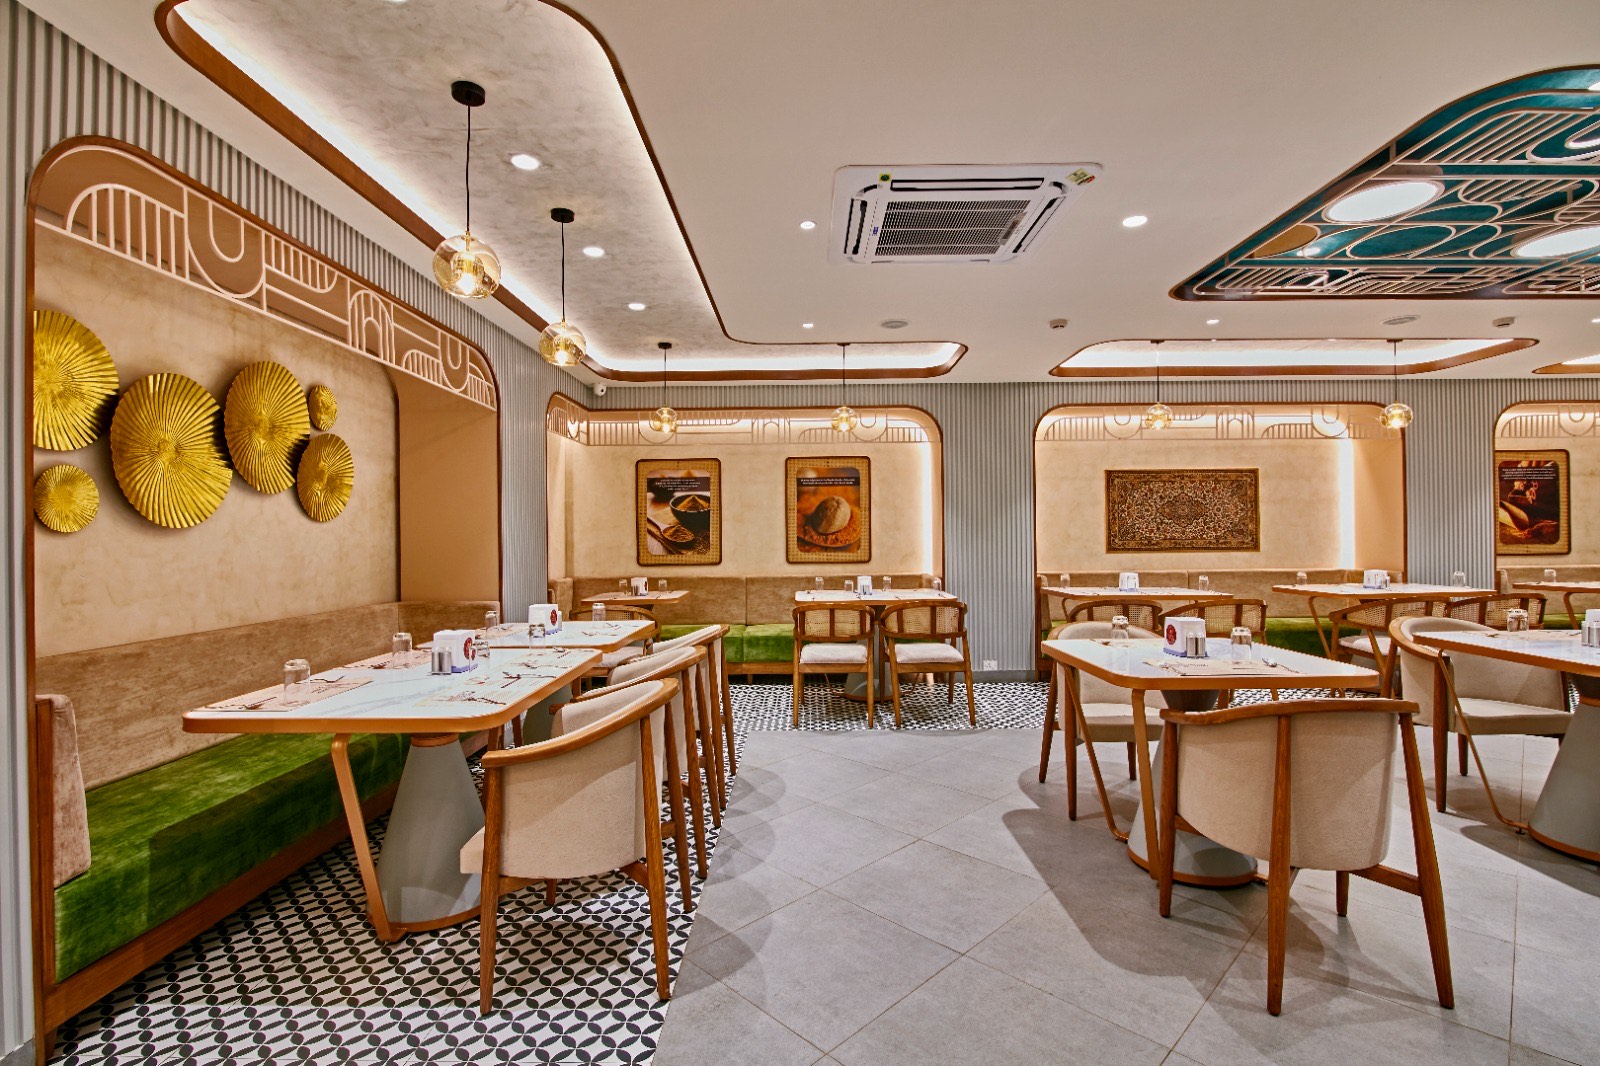 Aromas of Biryani restaurant's inside 2 seaters arrangement